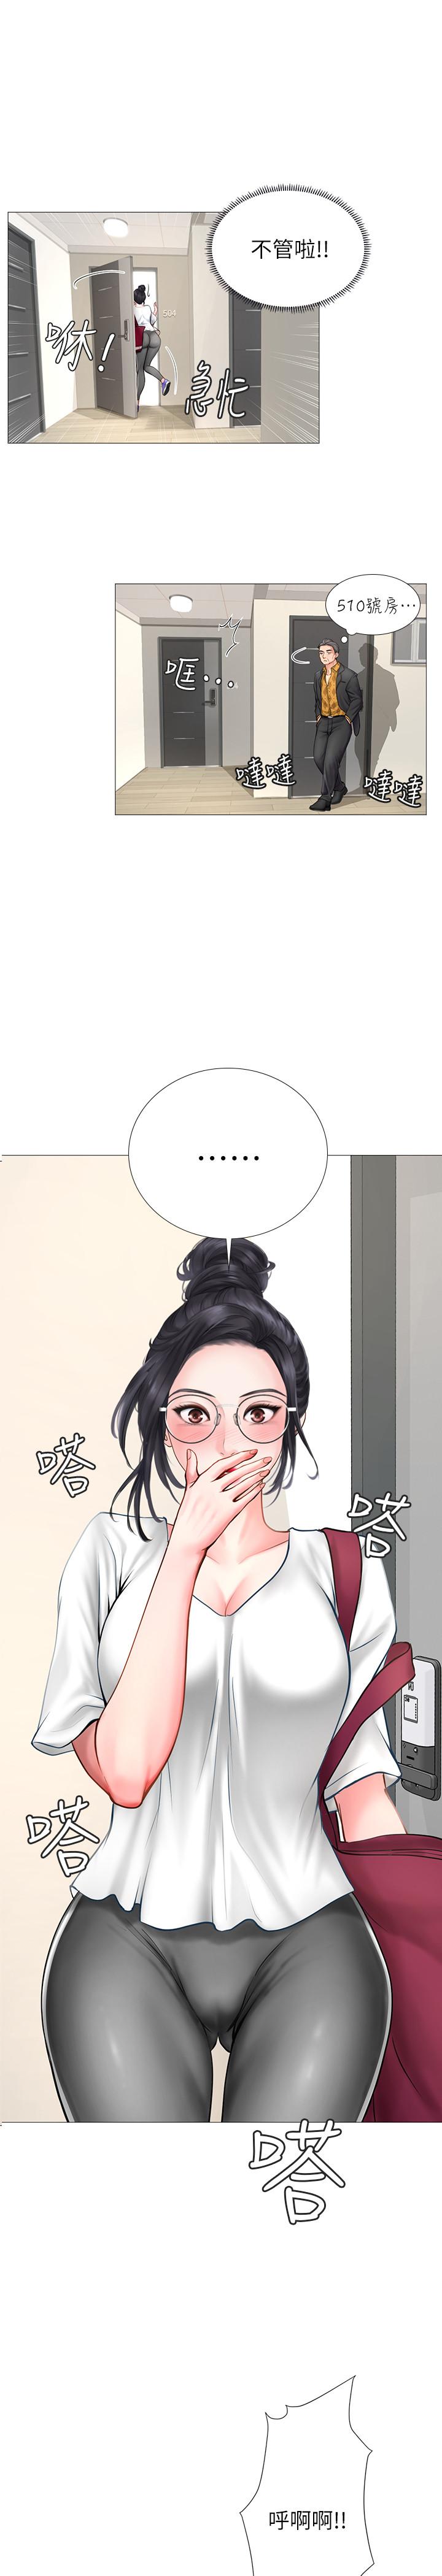 韩国污漫画 享樂補習街 第7话-目睹香艳刺激的场景 40